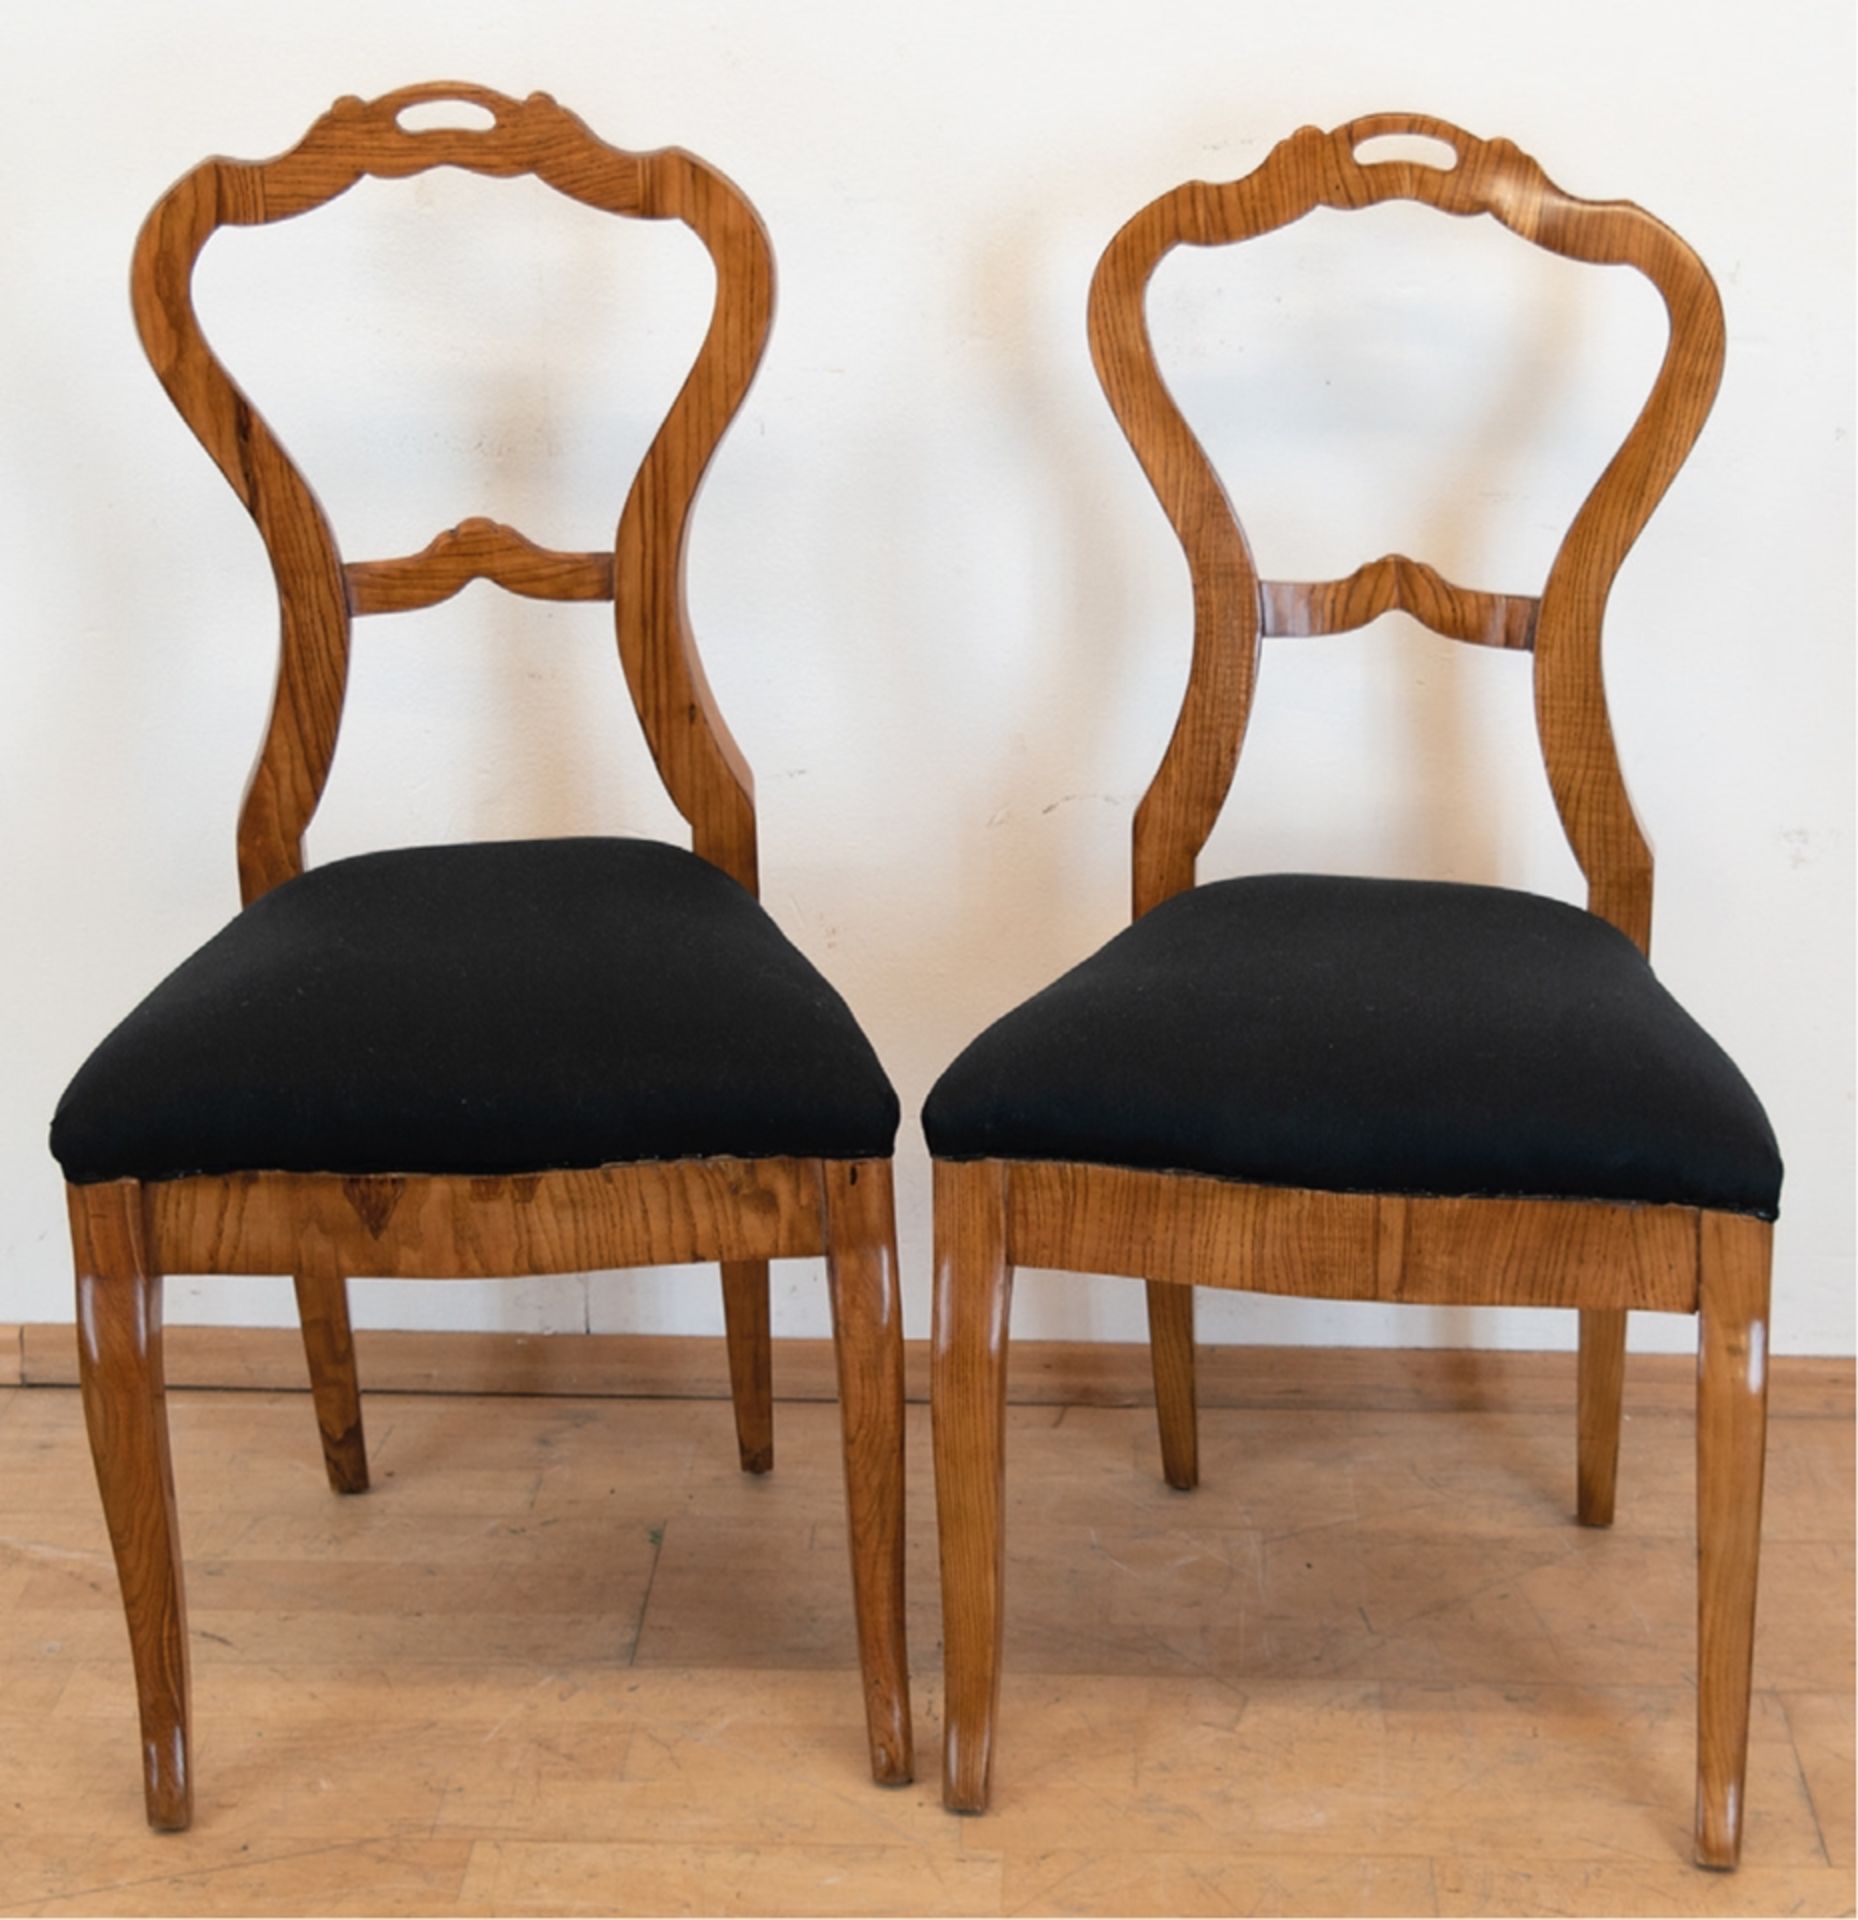 2 Louis-Philipp-Stühle, um 1860, Esche, geschwungene offene Rückenlehne mit Querstrebe, neu gepolst